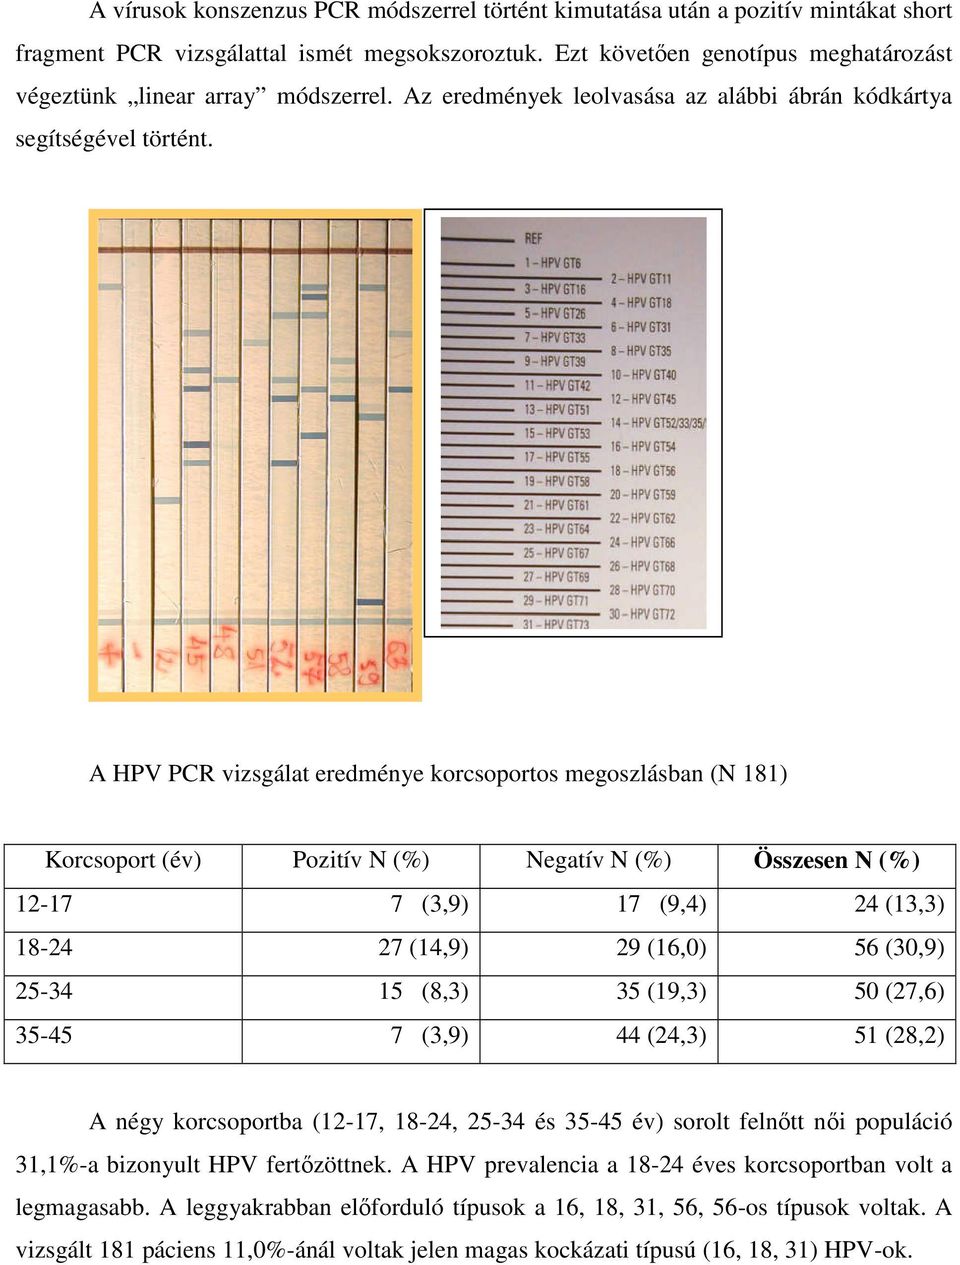 A HPV PCR vizsgálat eredménye korcsoportos megoszlásban (N 181) Korcsoport (év) Pozitív N (%) Negatív N (%) Összesen N (%) 12-17 7 (3,9) 17 (9,4) 24 (13,3) 18-24 27 (14,9) 29 (16,0) 56 (30,9) 25-34